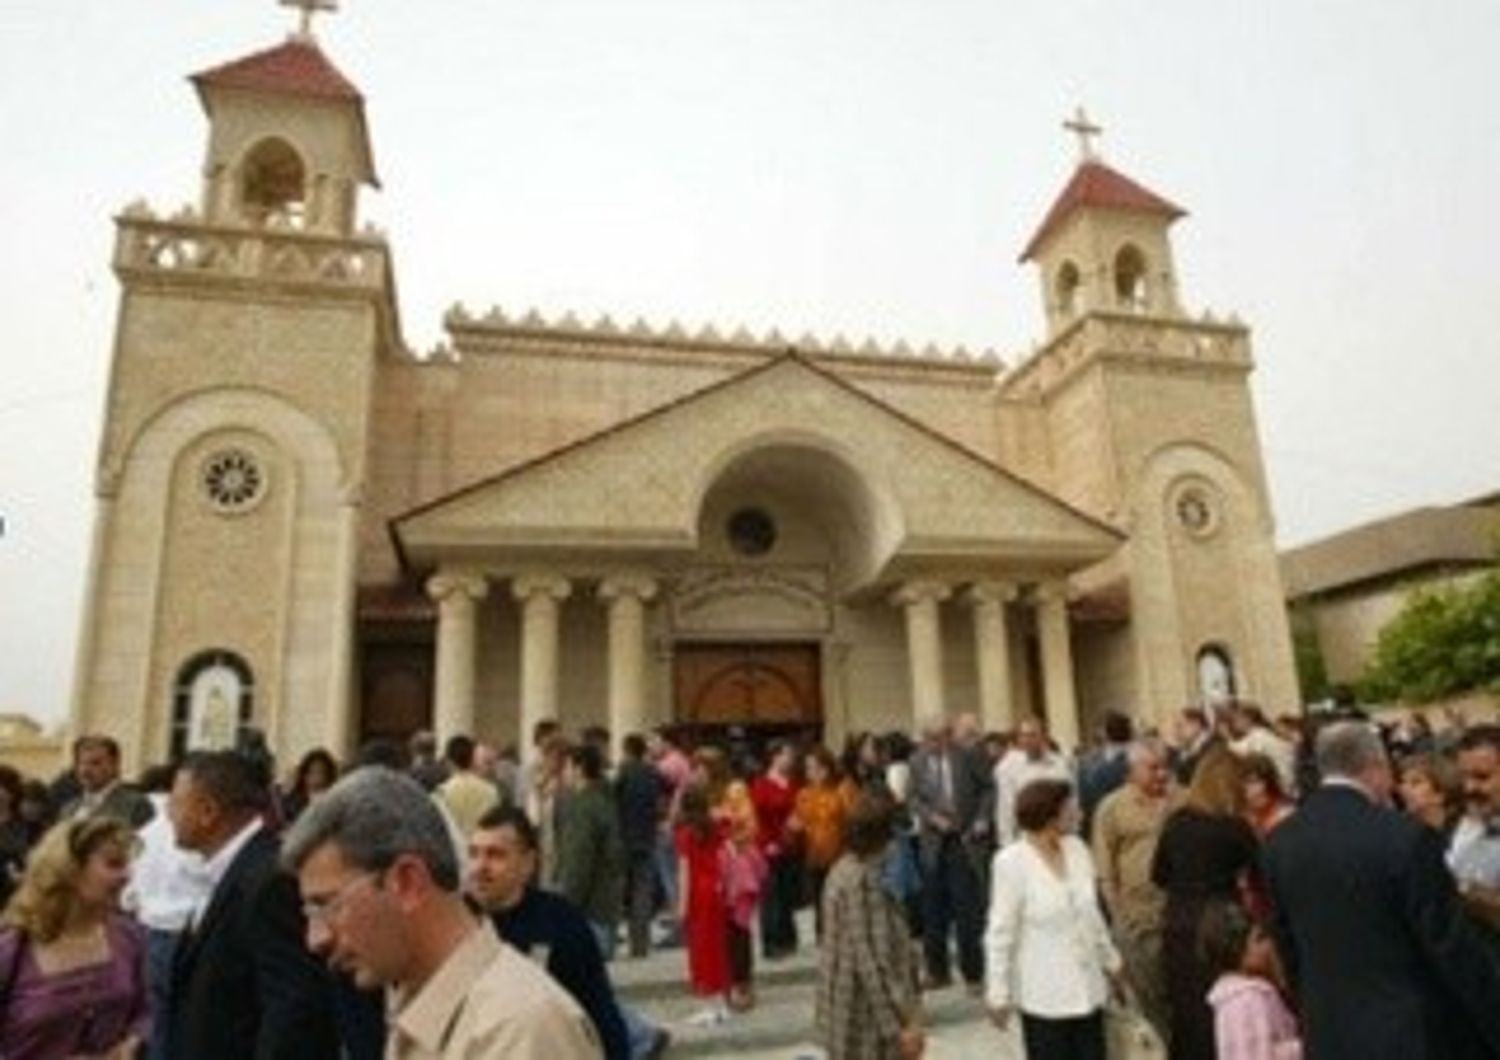 NATALE: TRA MINACCE E SPERANZE, 'VIA CRUCIS' CRISTIANI IN IRAQ